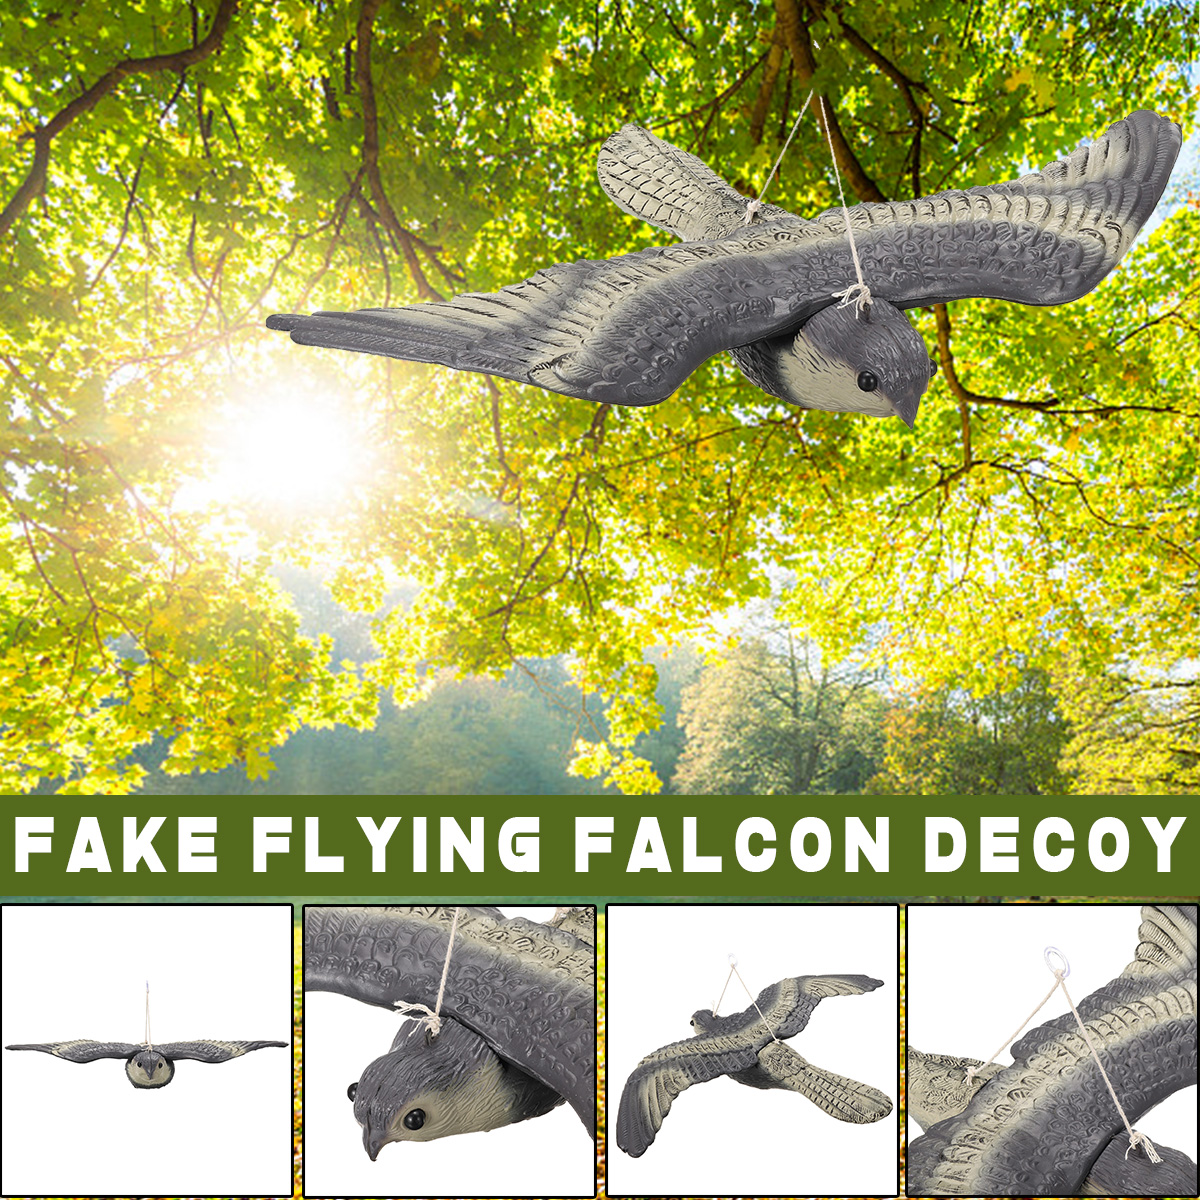 Falcon-Hawk-Hunting-Decoy-Bird-Deterrent-Scarer-Outdoor-Garden-Hunting-Equipment-1556624-1